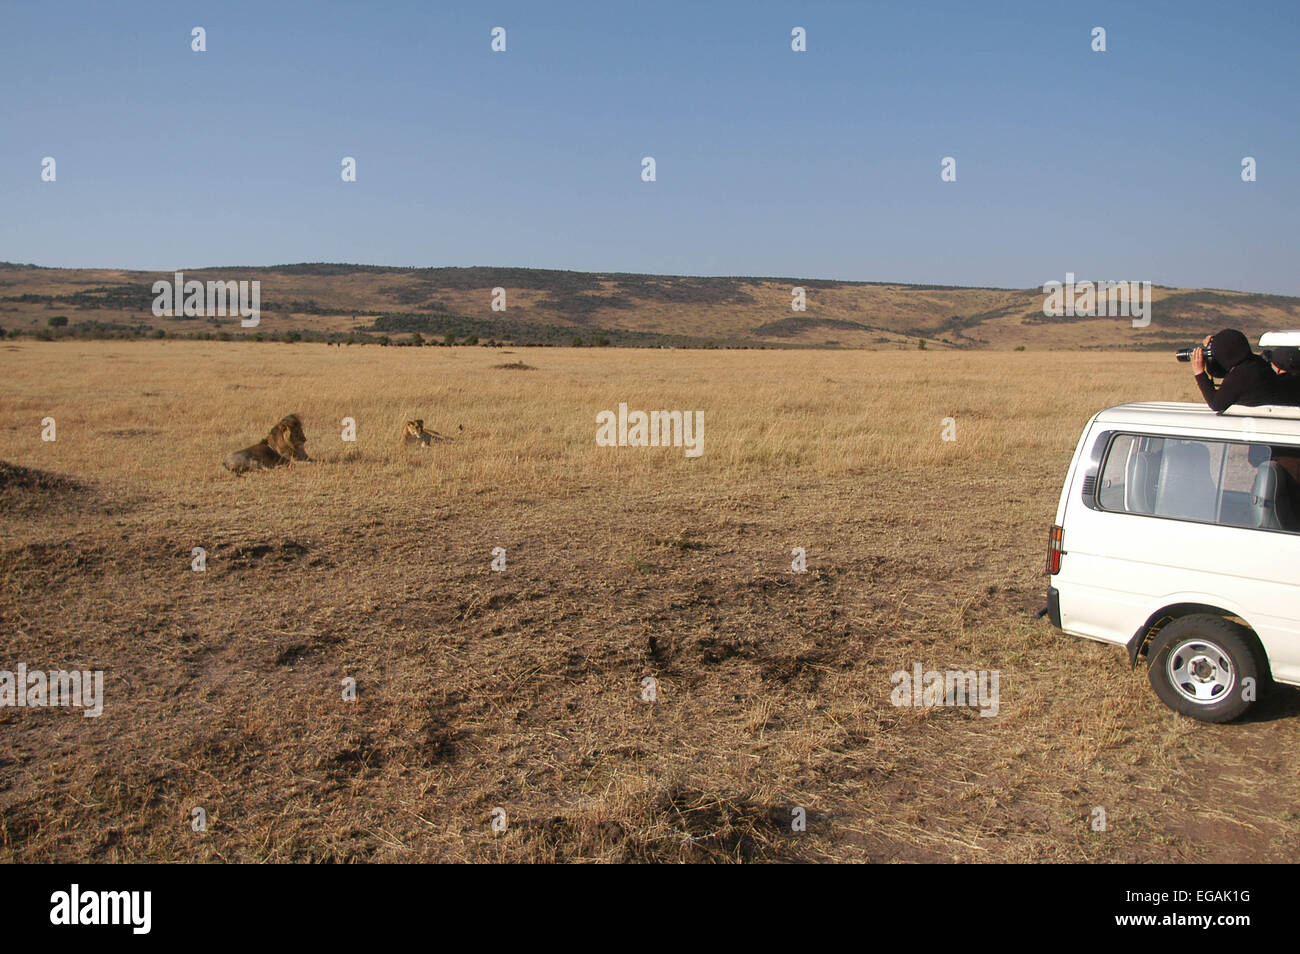 Les touristes de prendre des photos d'un homme lion à partir de leur minibus Banque D'Images